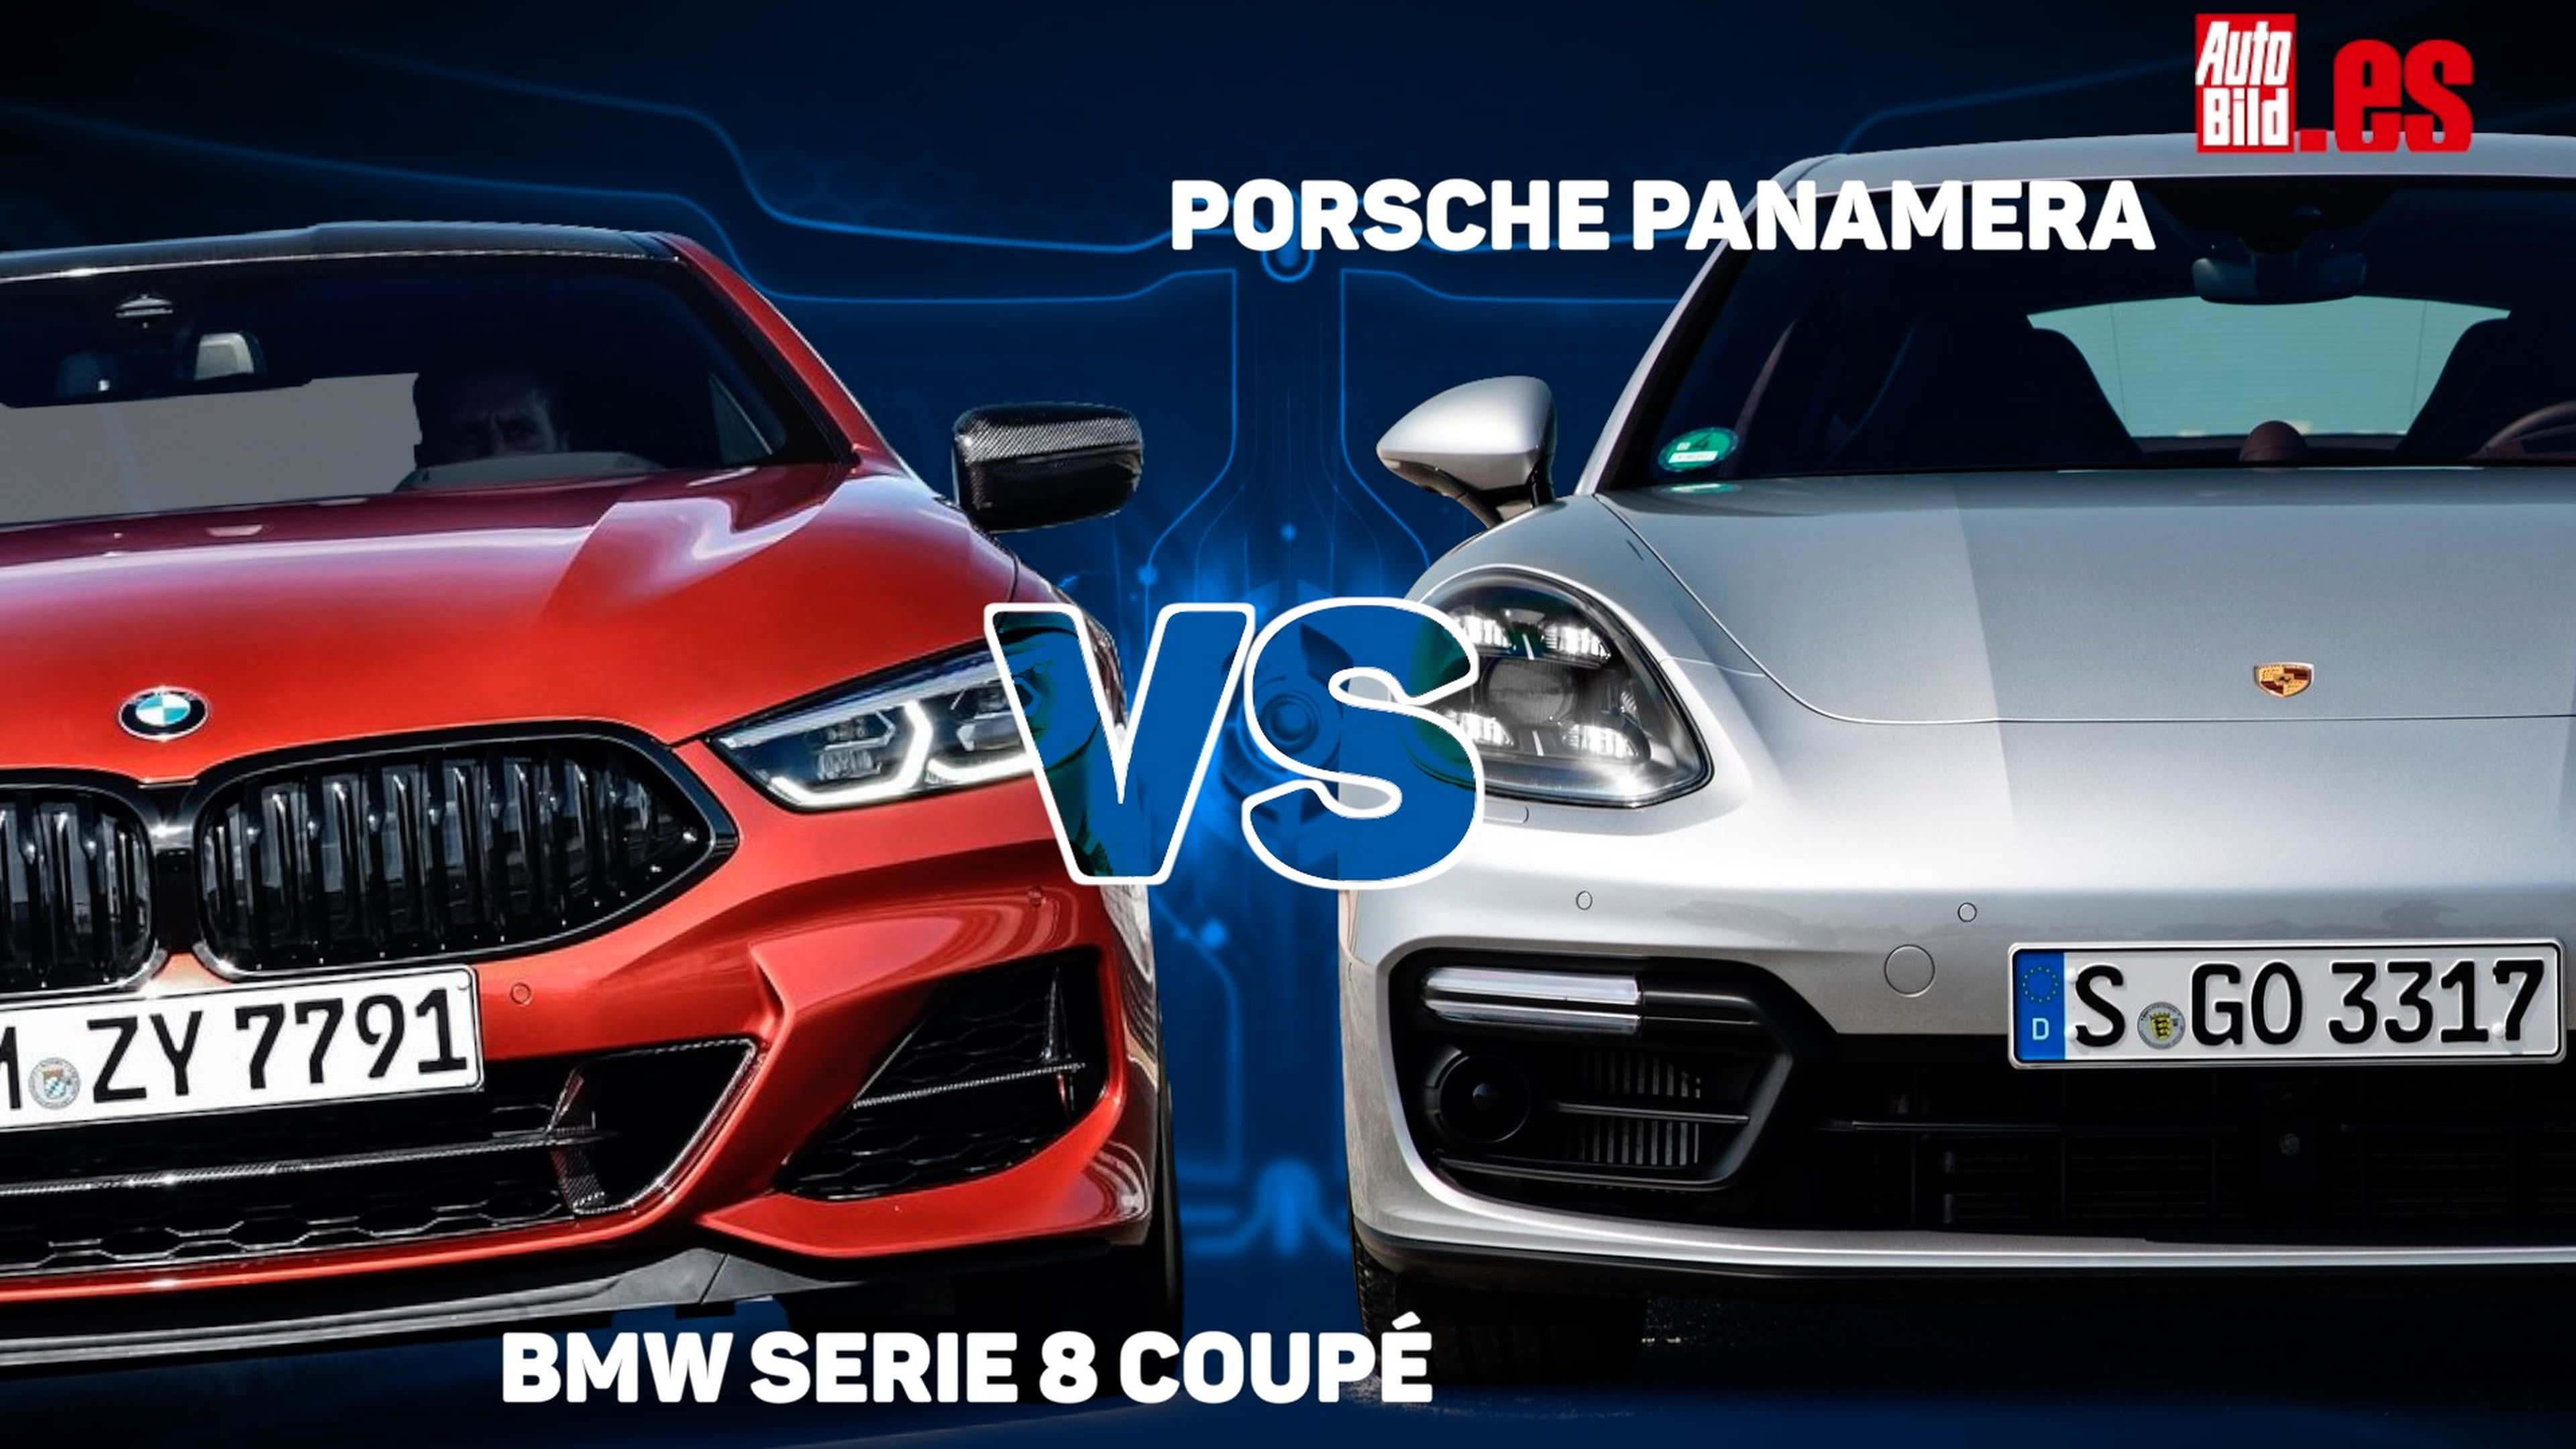 VÍDEO: BMW Serie 8 Coupé vs Porsche Panamera, cara a cara virtual